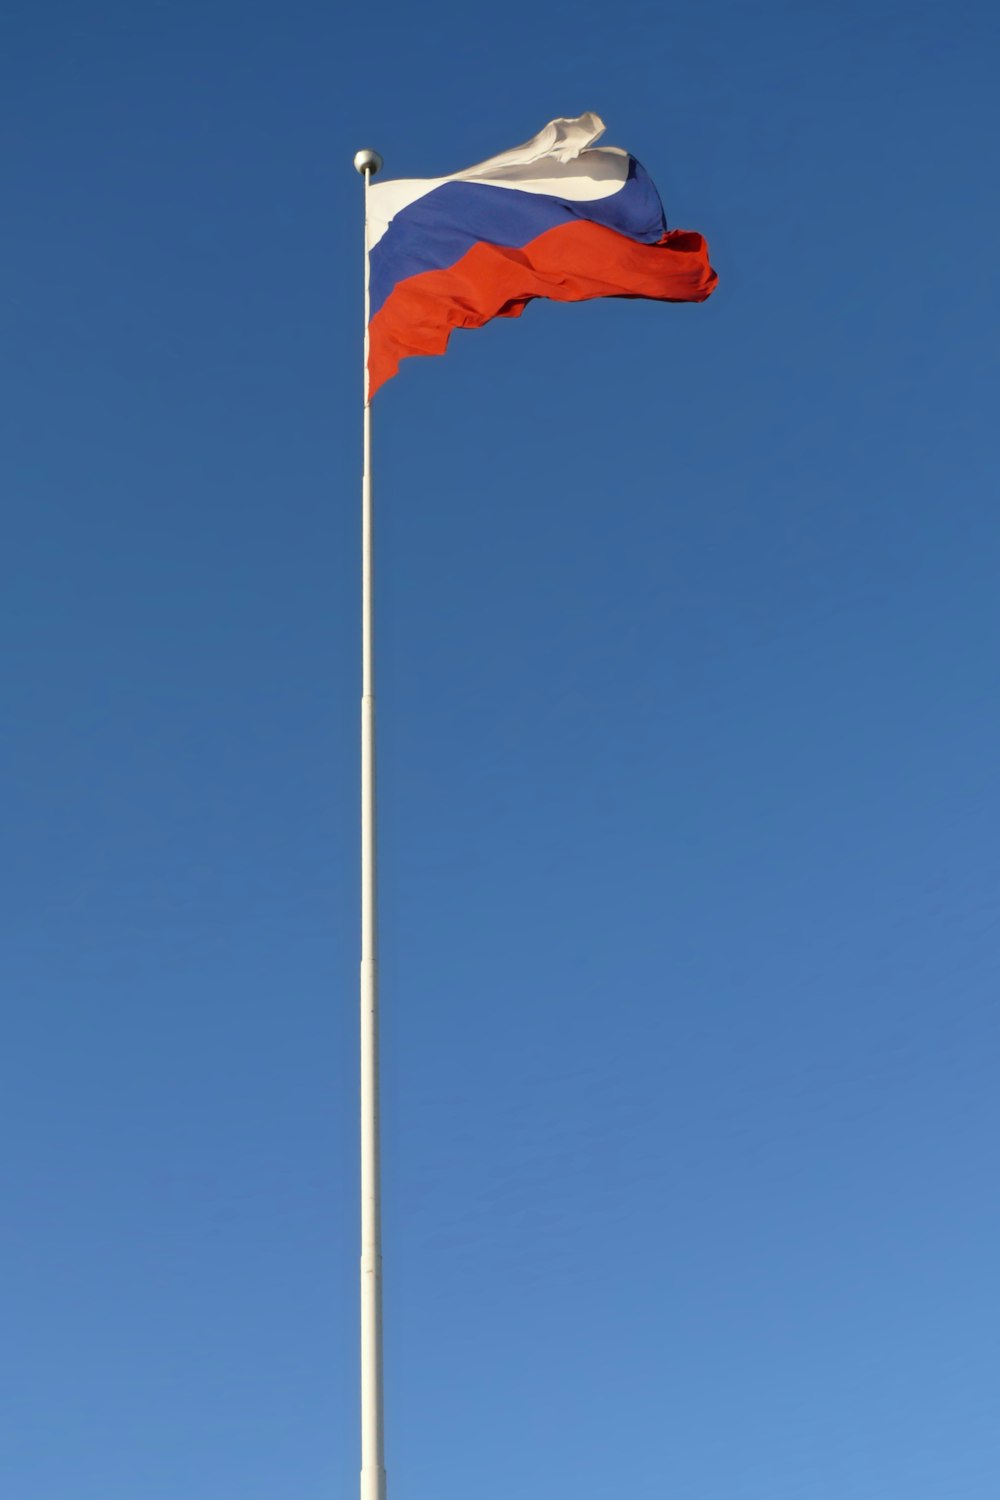 Una bandera ondea alto en el cielo azul